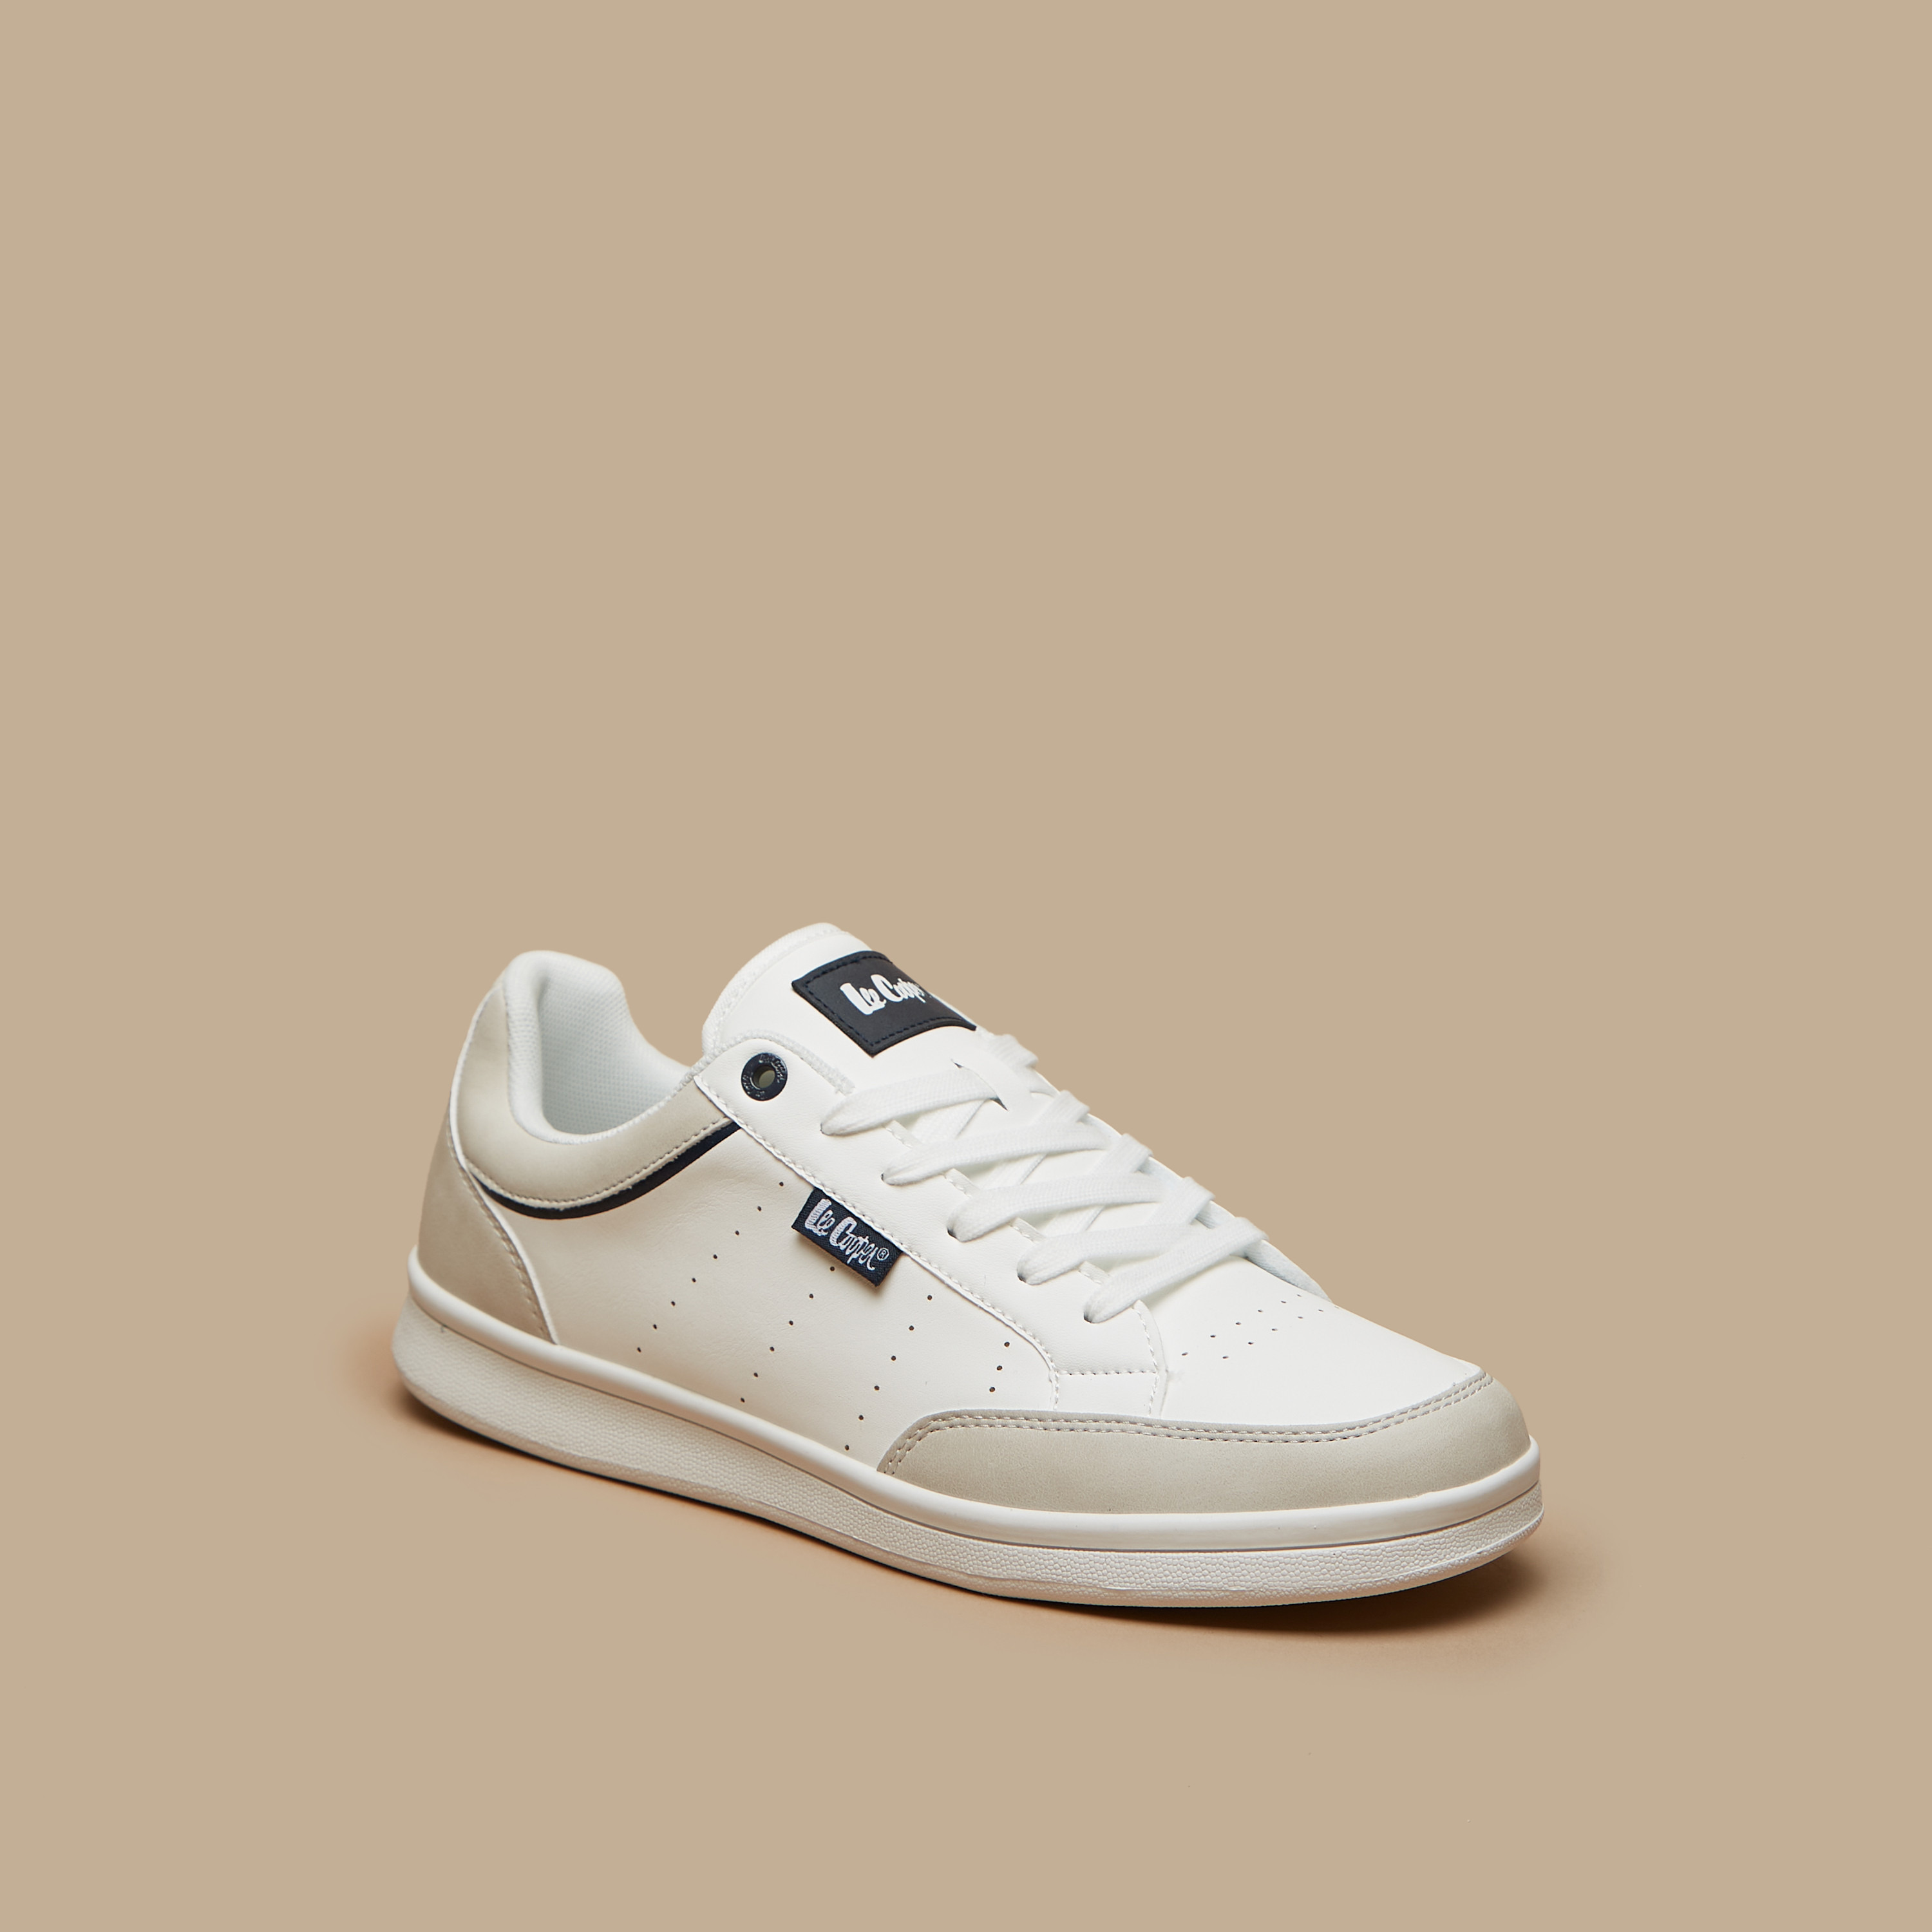 Footwear | Lee Cooper Sneakers New | Freeup